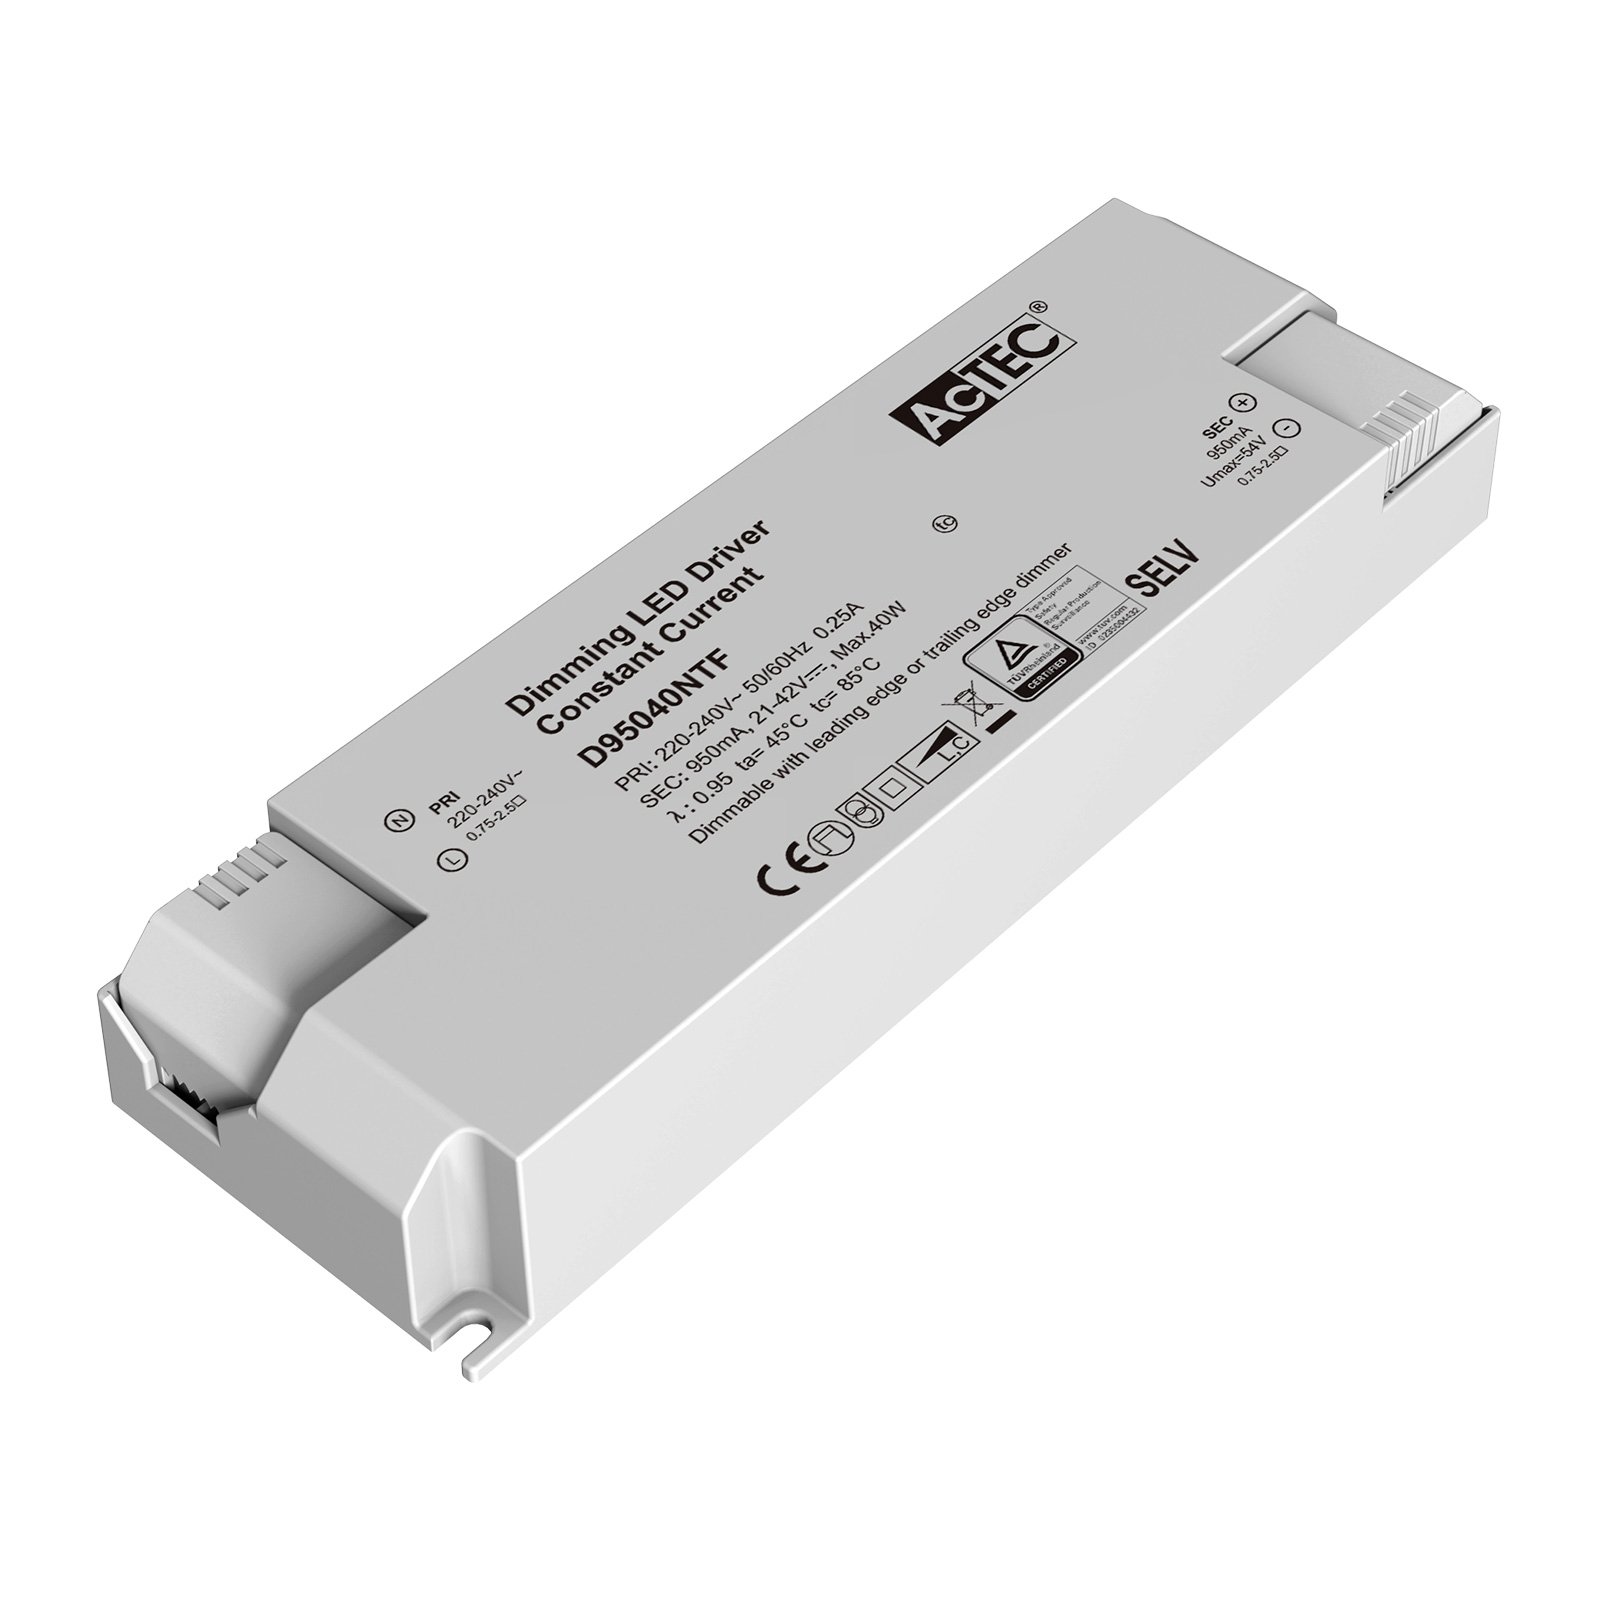 AcTEC Triac LED driver CC max. 40W 950mA